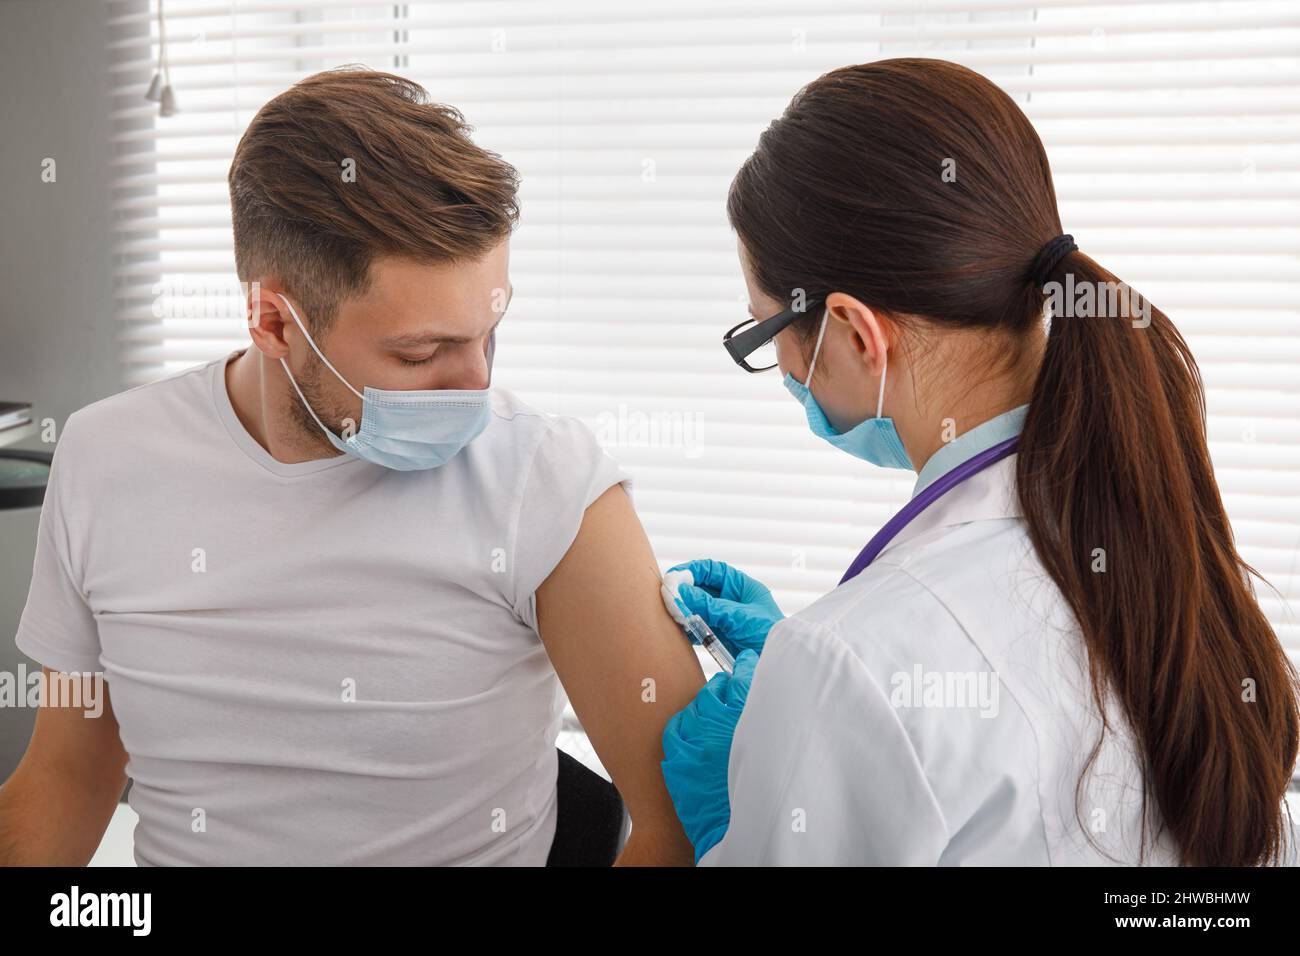 Il medico tiene una siringa prima di fare un'iniezione a un paziente in una maschera medica. Covid-19 o vaccino contro il coronavirus. Vaccinazione della popolazione Foto Stock